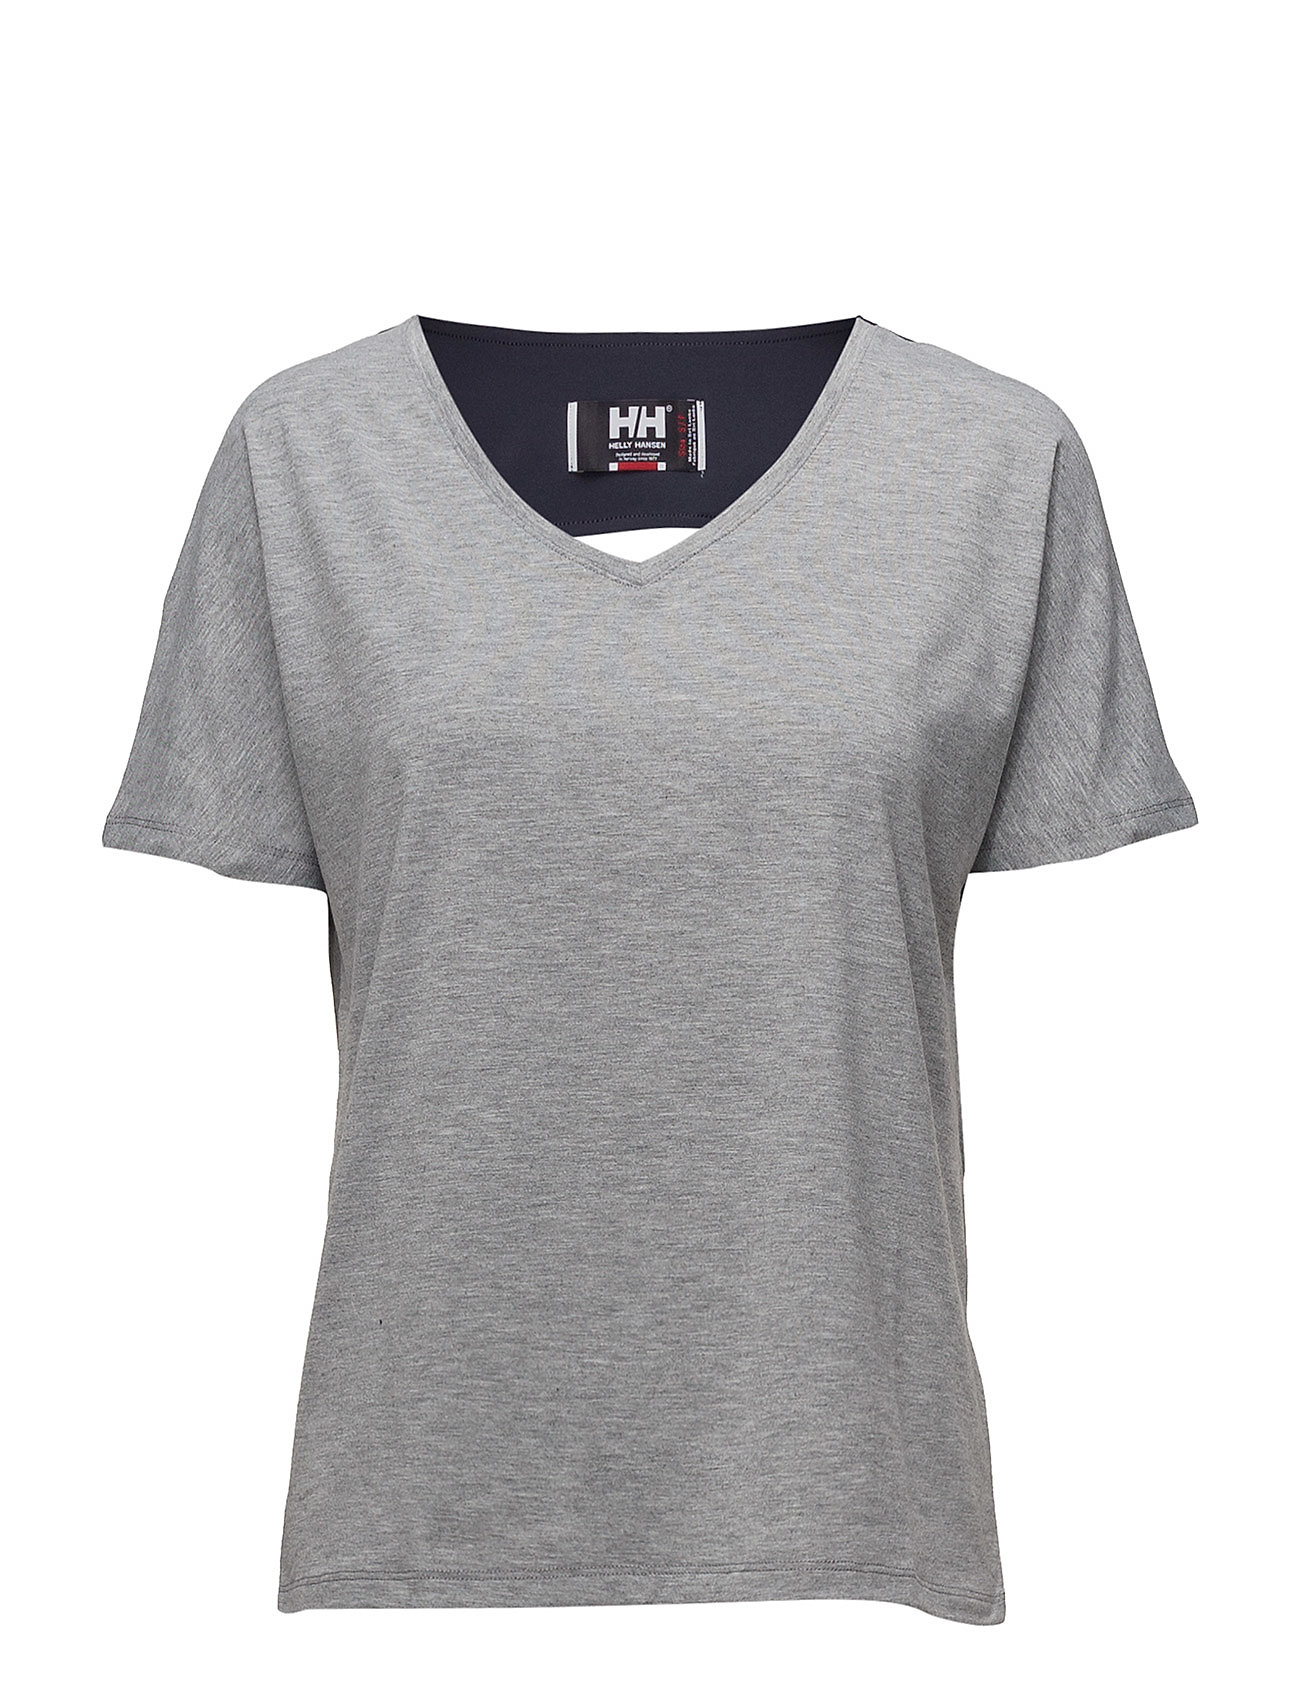 W Thalia Loose T-Shirt T-shirts & Tops Short-sleeved Harmaa Helly Hansen